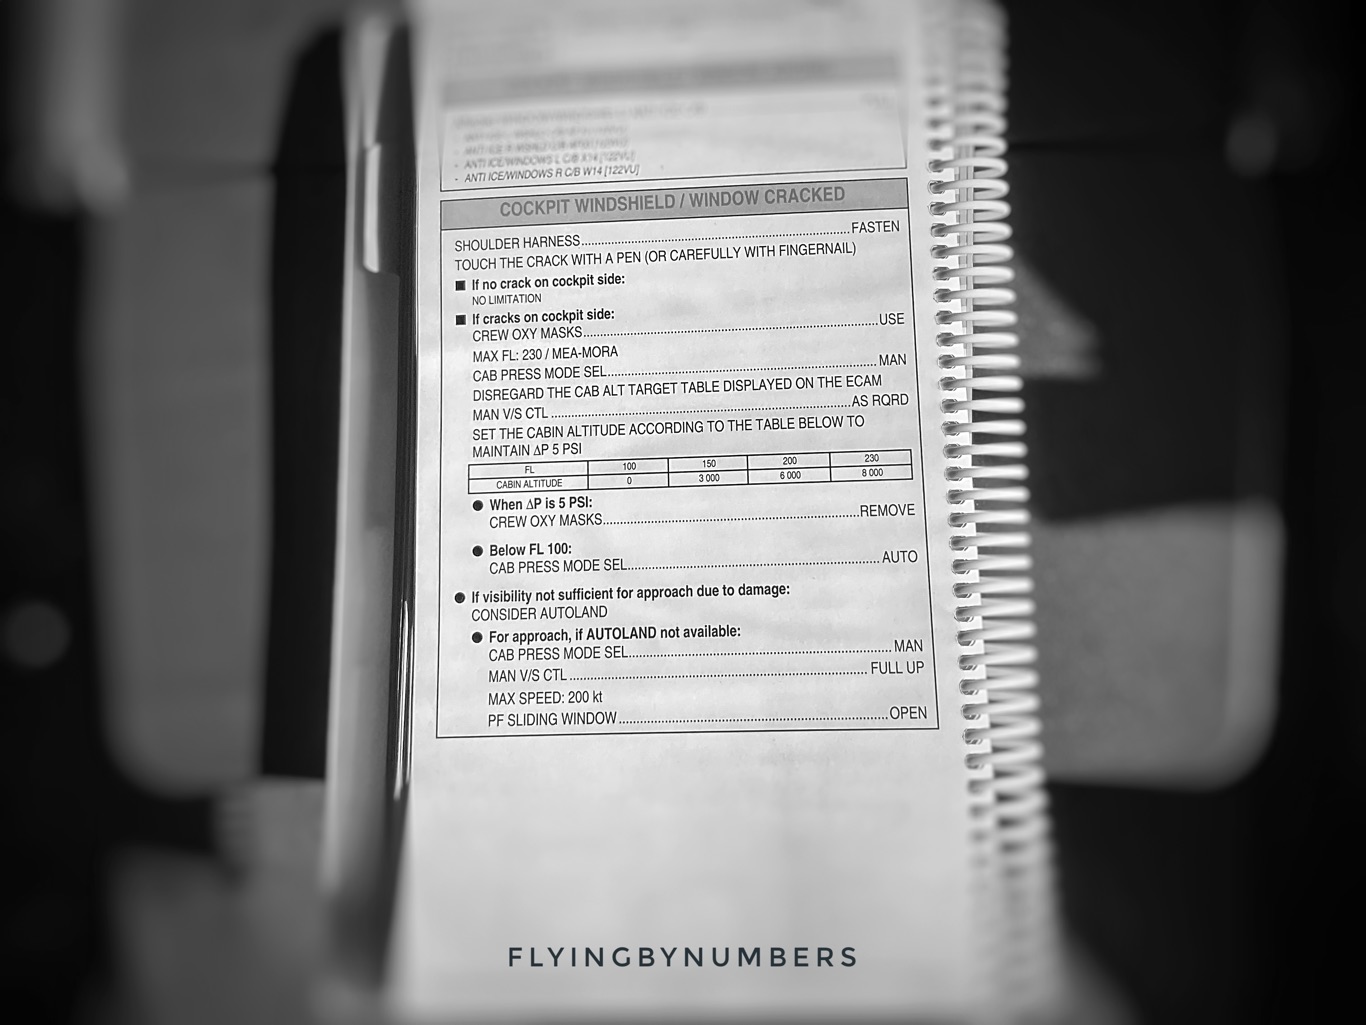 Airbus pilot broken window checklist procedures